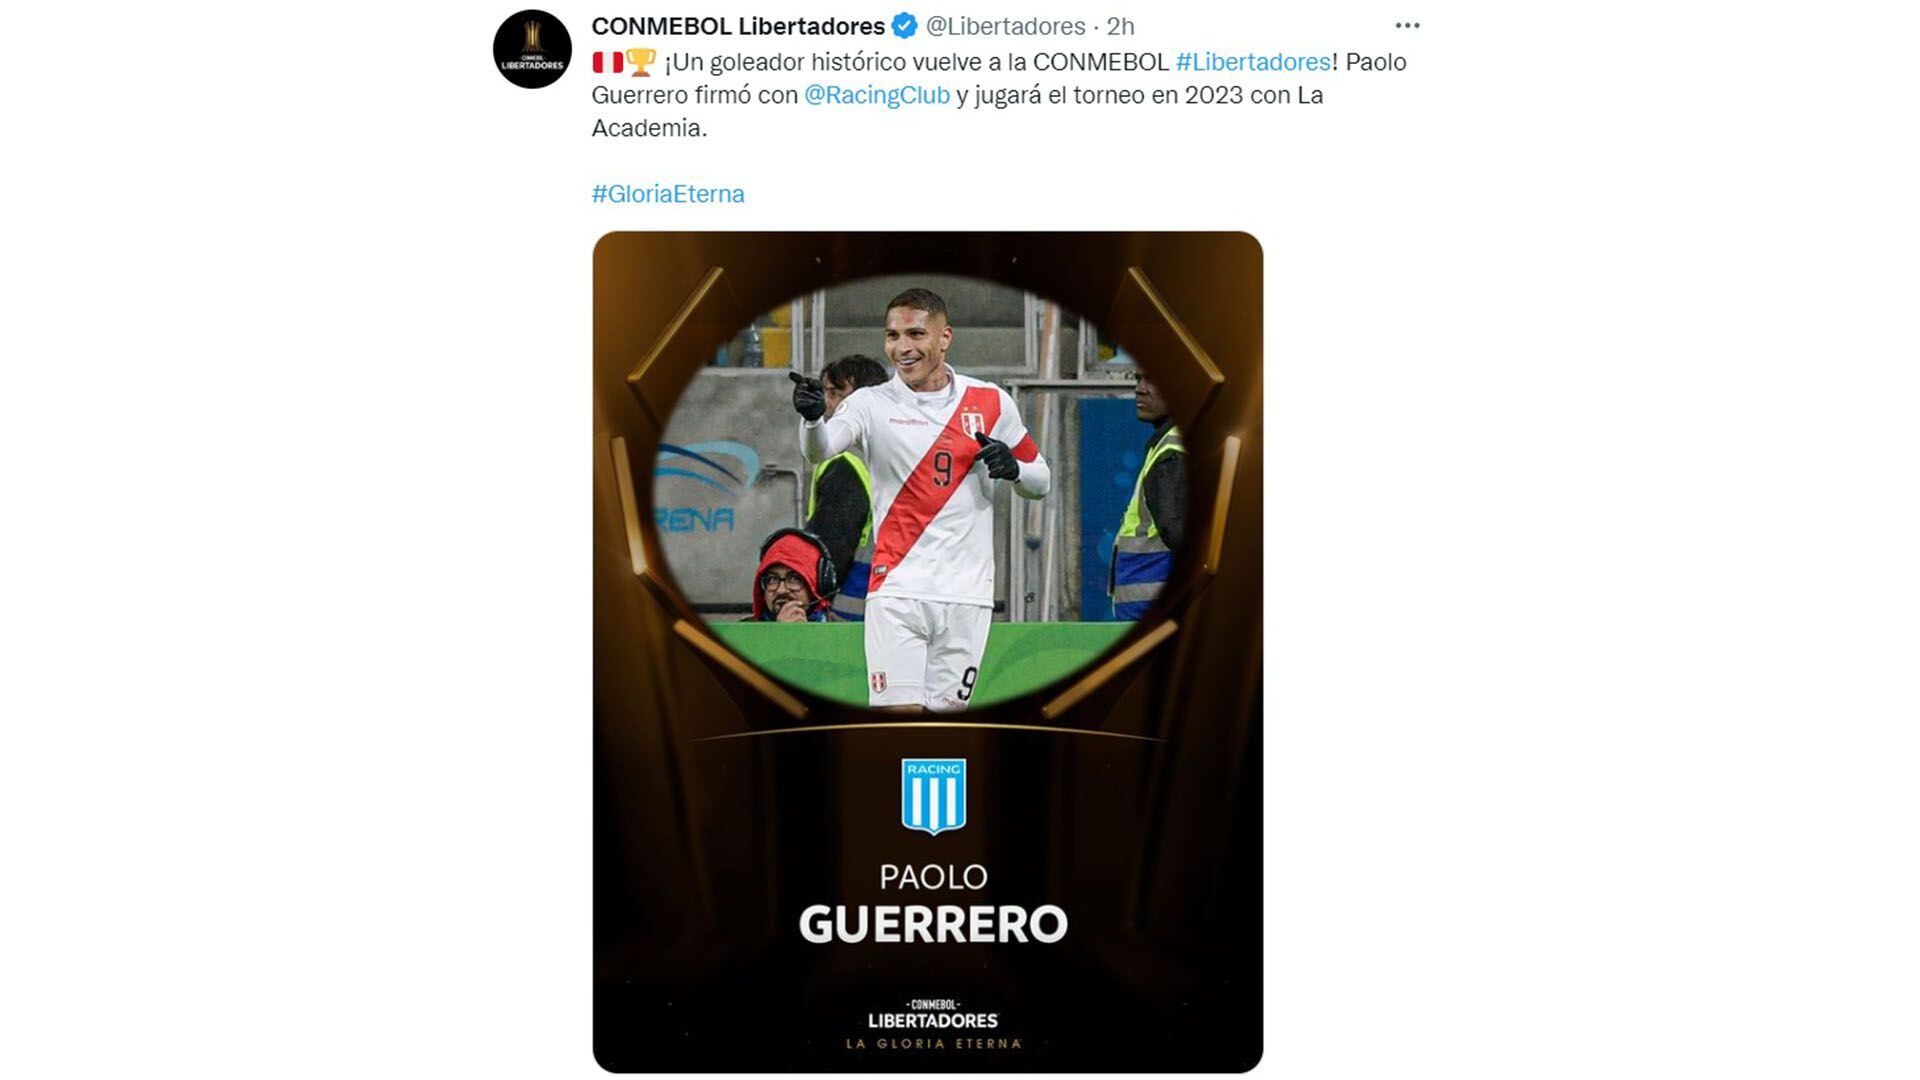 Publicación de Conmebol tras fichaje de Paolo Guerrero a Racing Club y regreso a la Copa Libertadores.